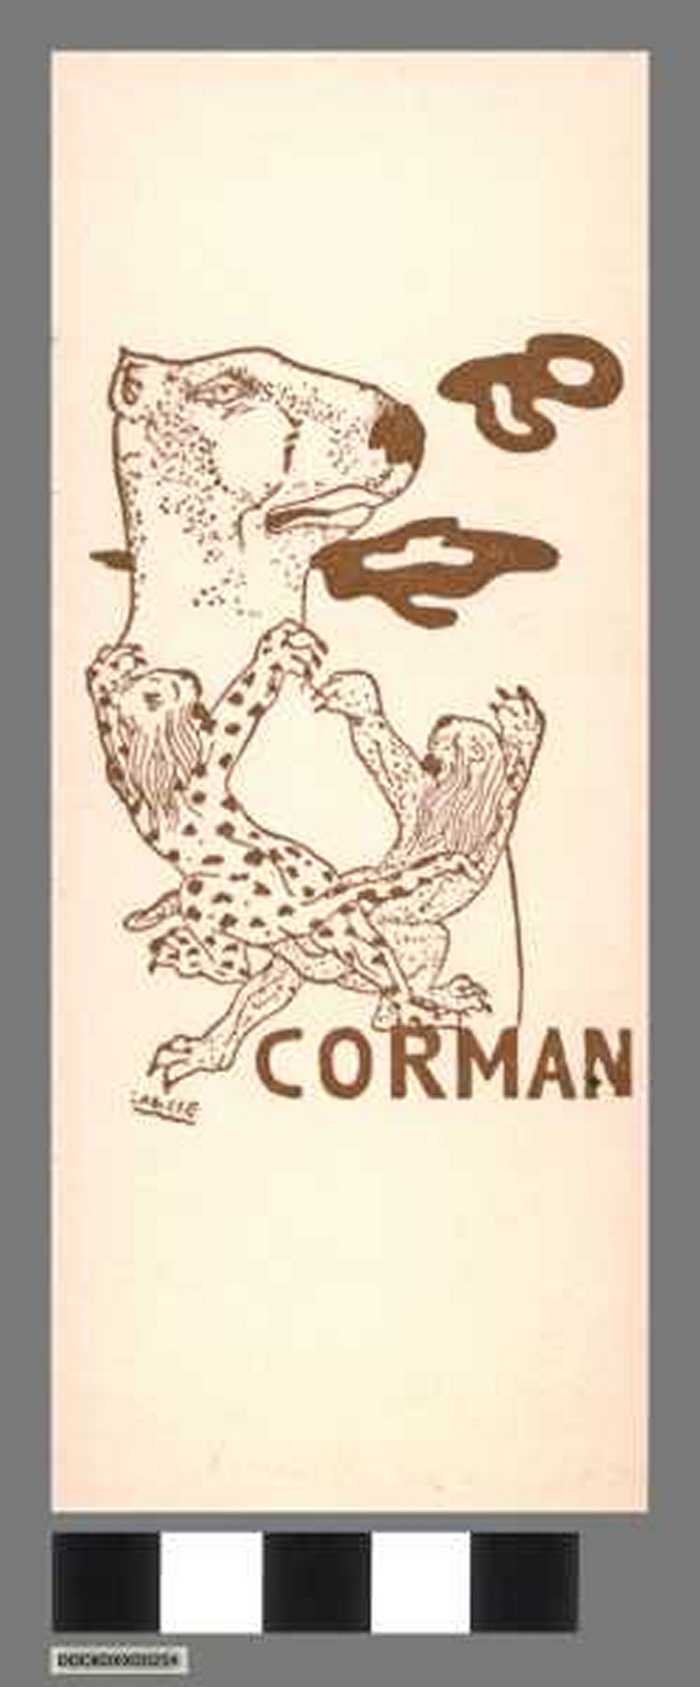 Bladwijzer met reclame voor Librairie Corman